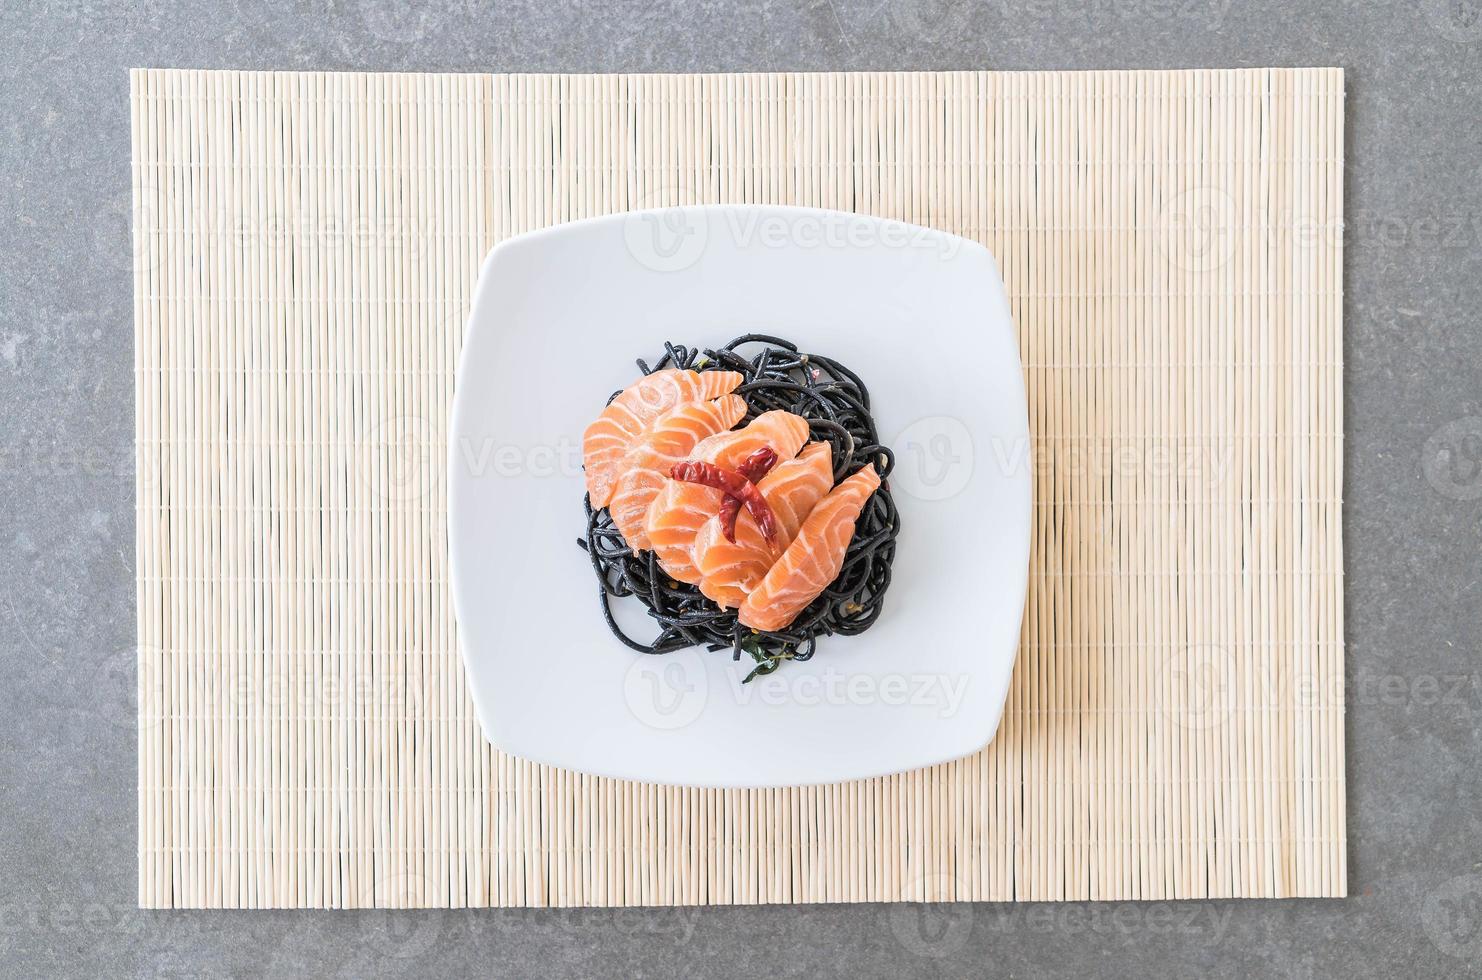 espaguetis negros picantes con salmón - estilo de comida fusión foto